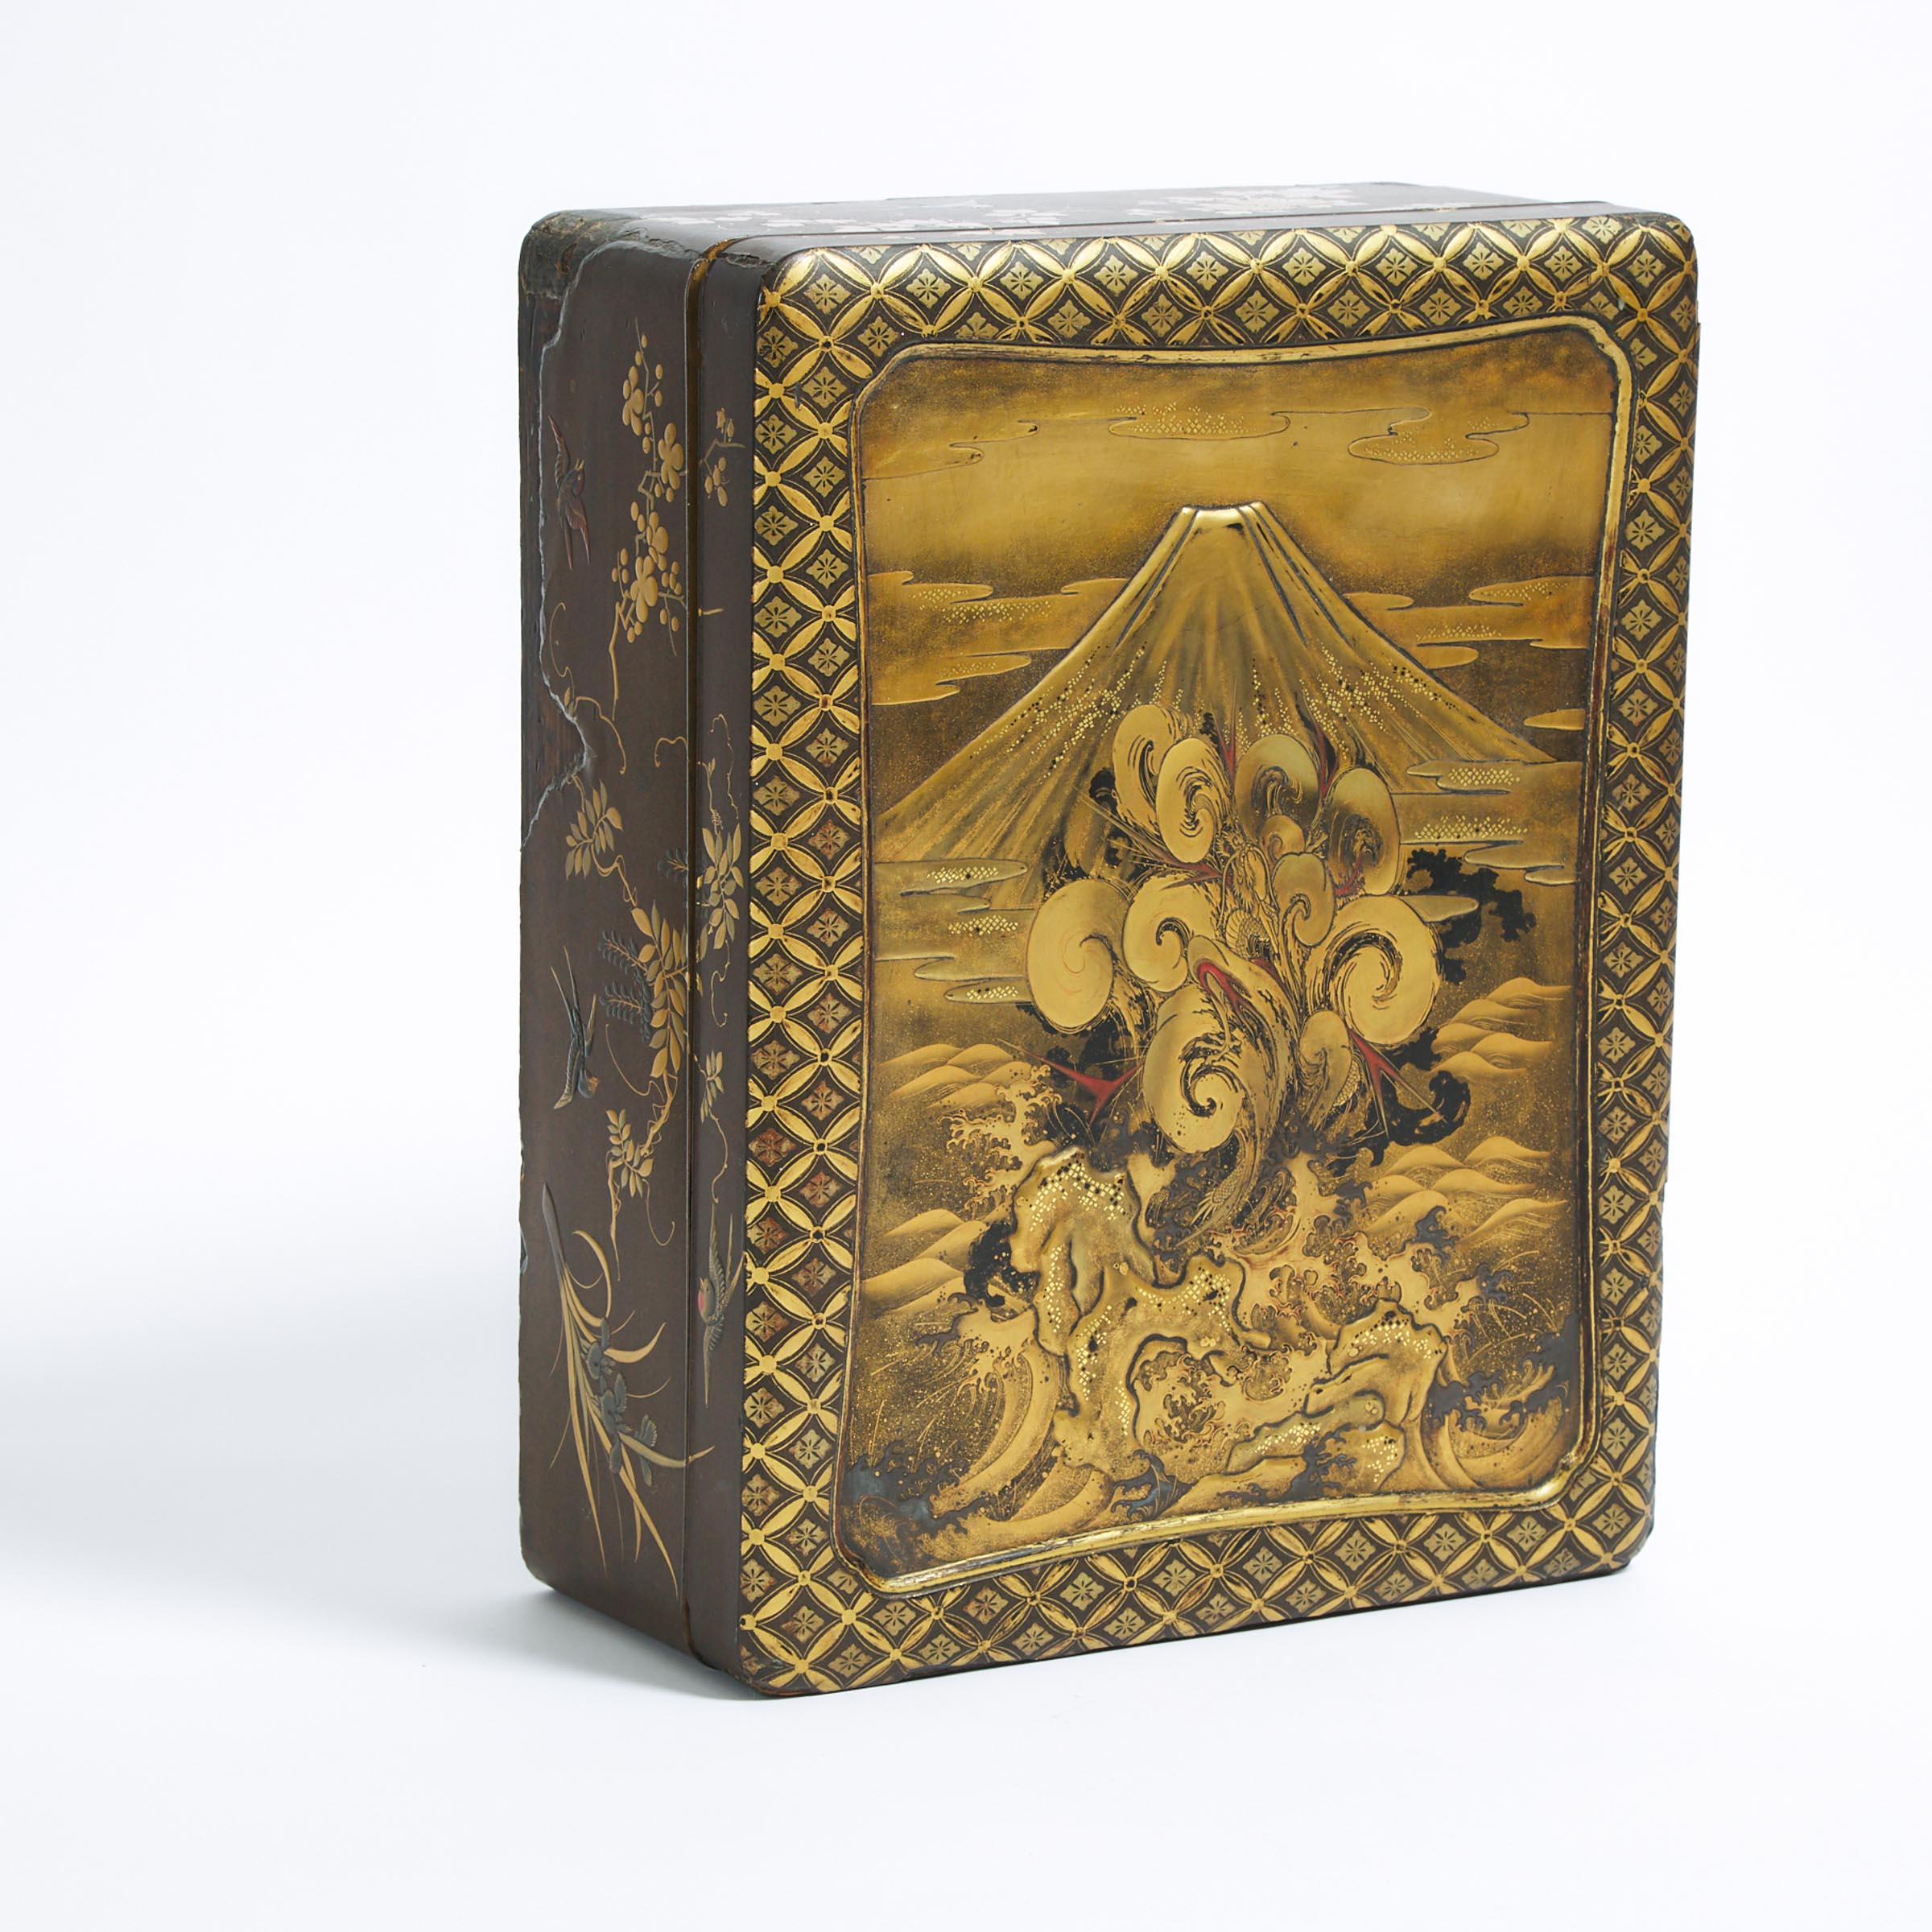 A Fine Gold-Lacquer 'Dragon' Document Box and Cover (Ryoshibako), Edo Period, 18th/19th Century